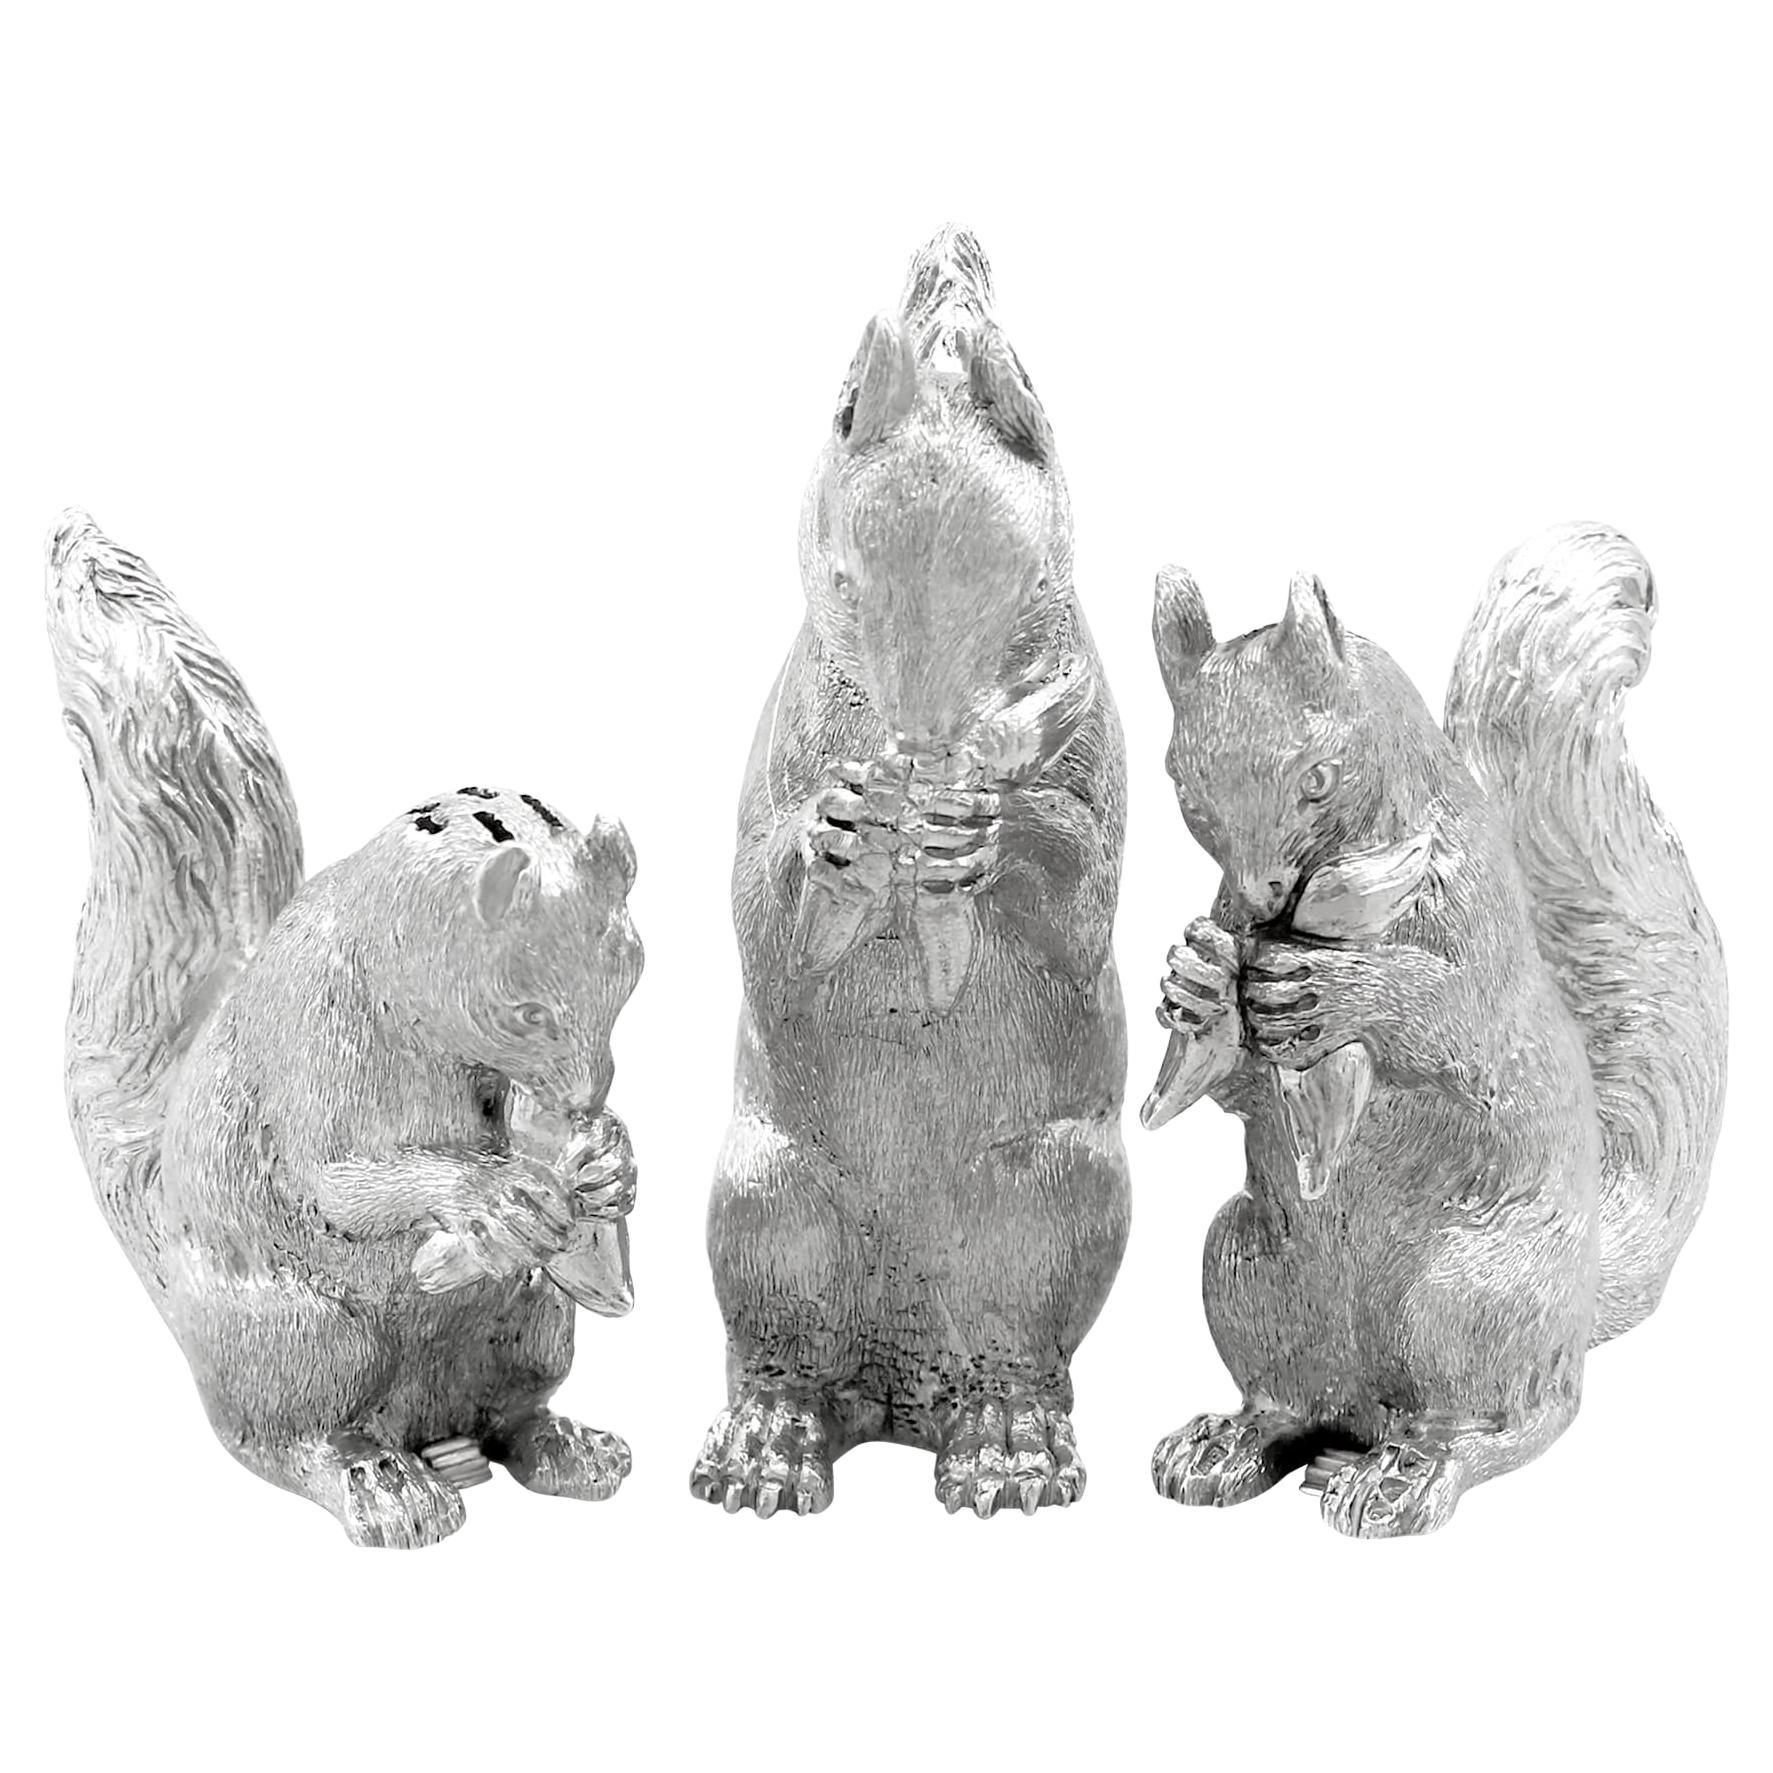 Antico set di condimenti in argento Sterling vittoriano del 1800 con scoiattolo